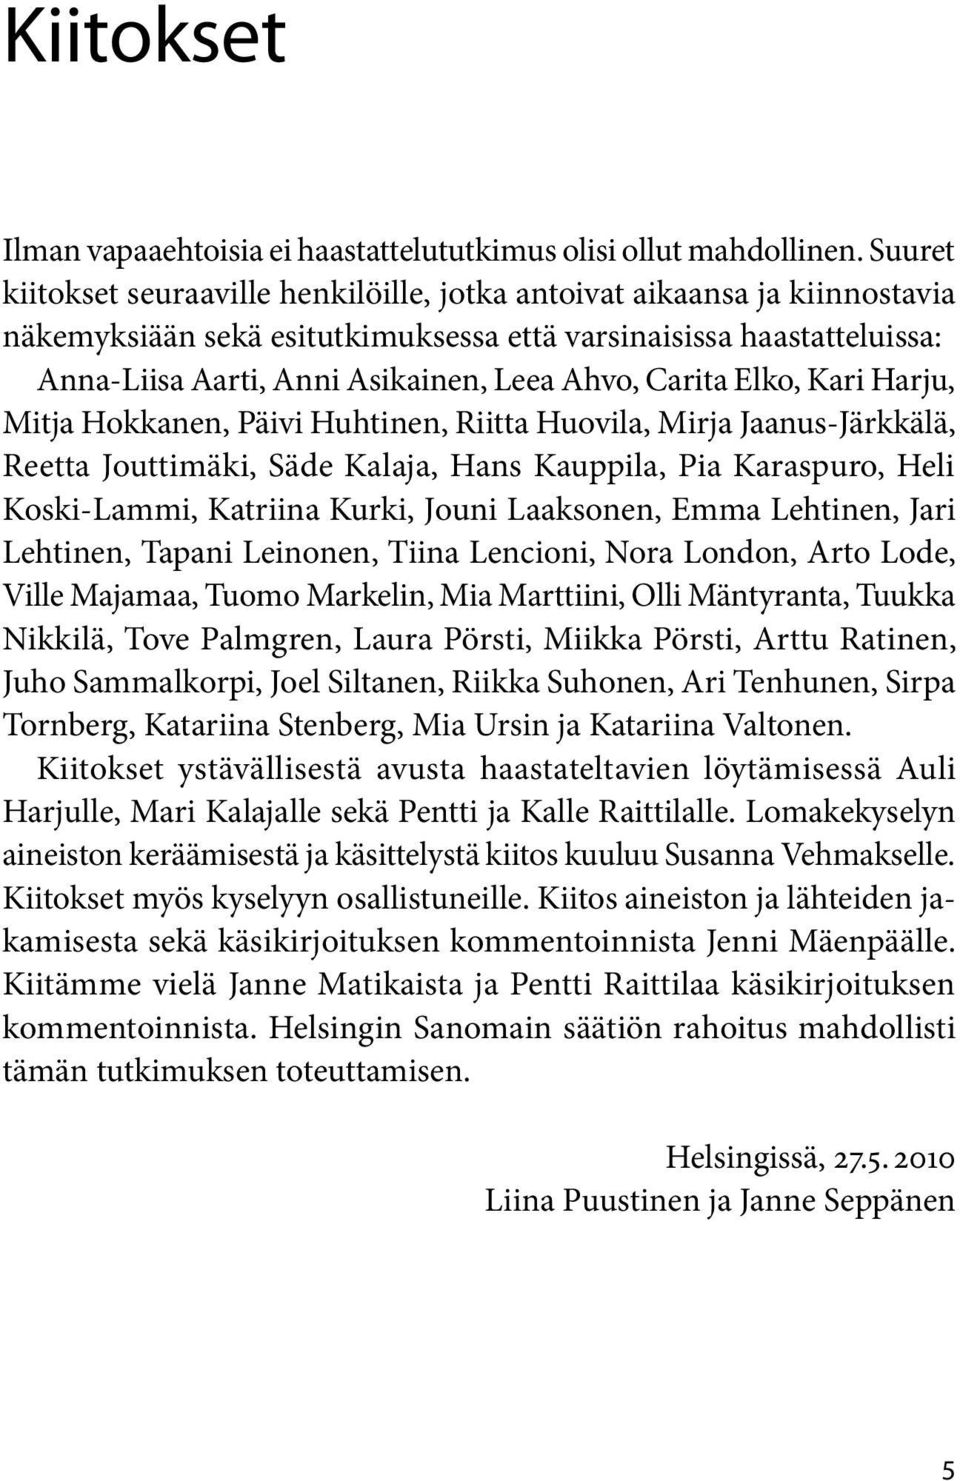 Carita Elko, Kari Harju, Mitja Hokkanen, Päivi Huhtinen, Riitta Huovila, Mirja Jaanus-Järkkälä, Reetta Jouttimäki, Säde Kalaja, Hans Kauppila, Pia Karaspuro, Heli Koski-Lammi, Katriina Kurki, Jouni